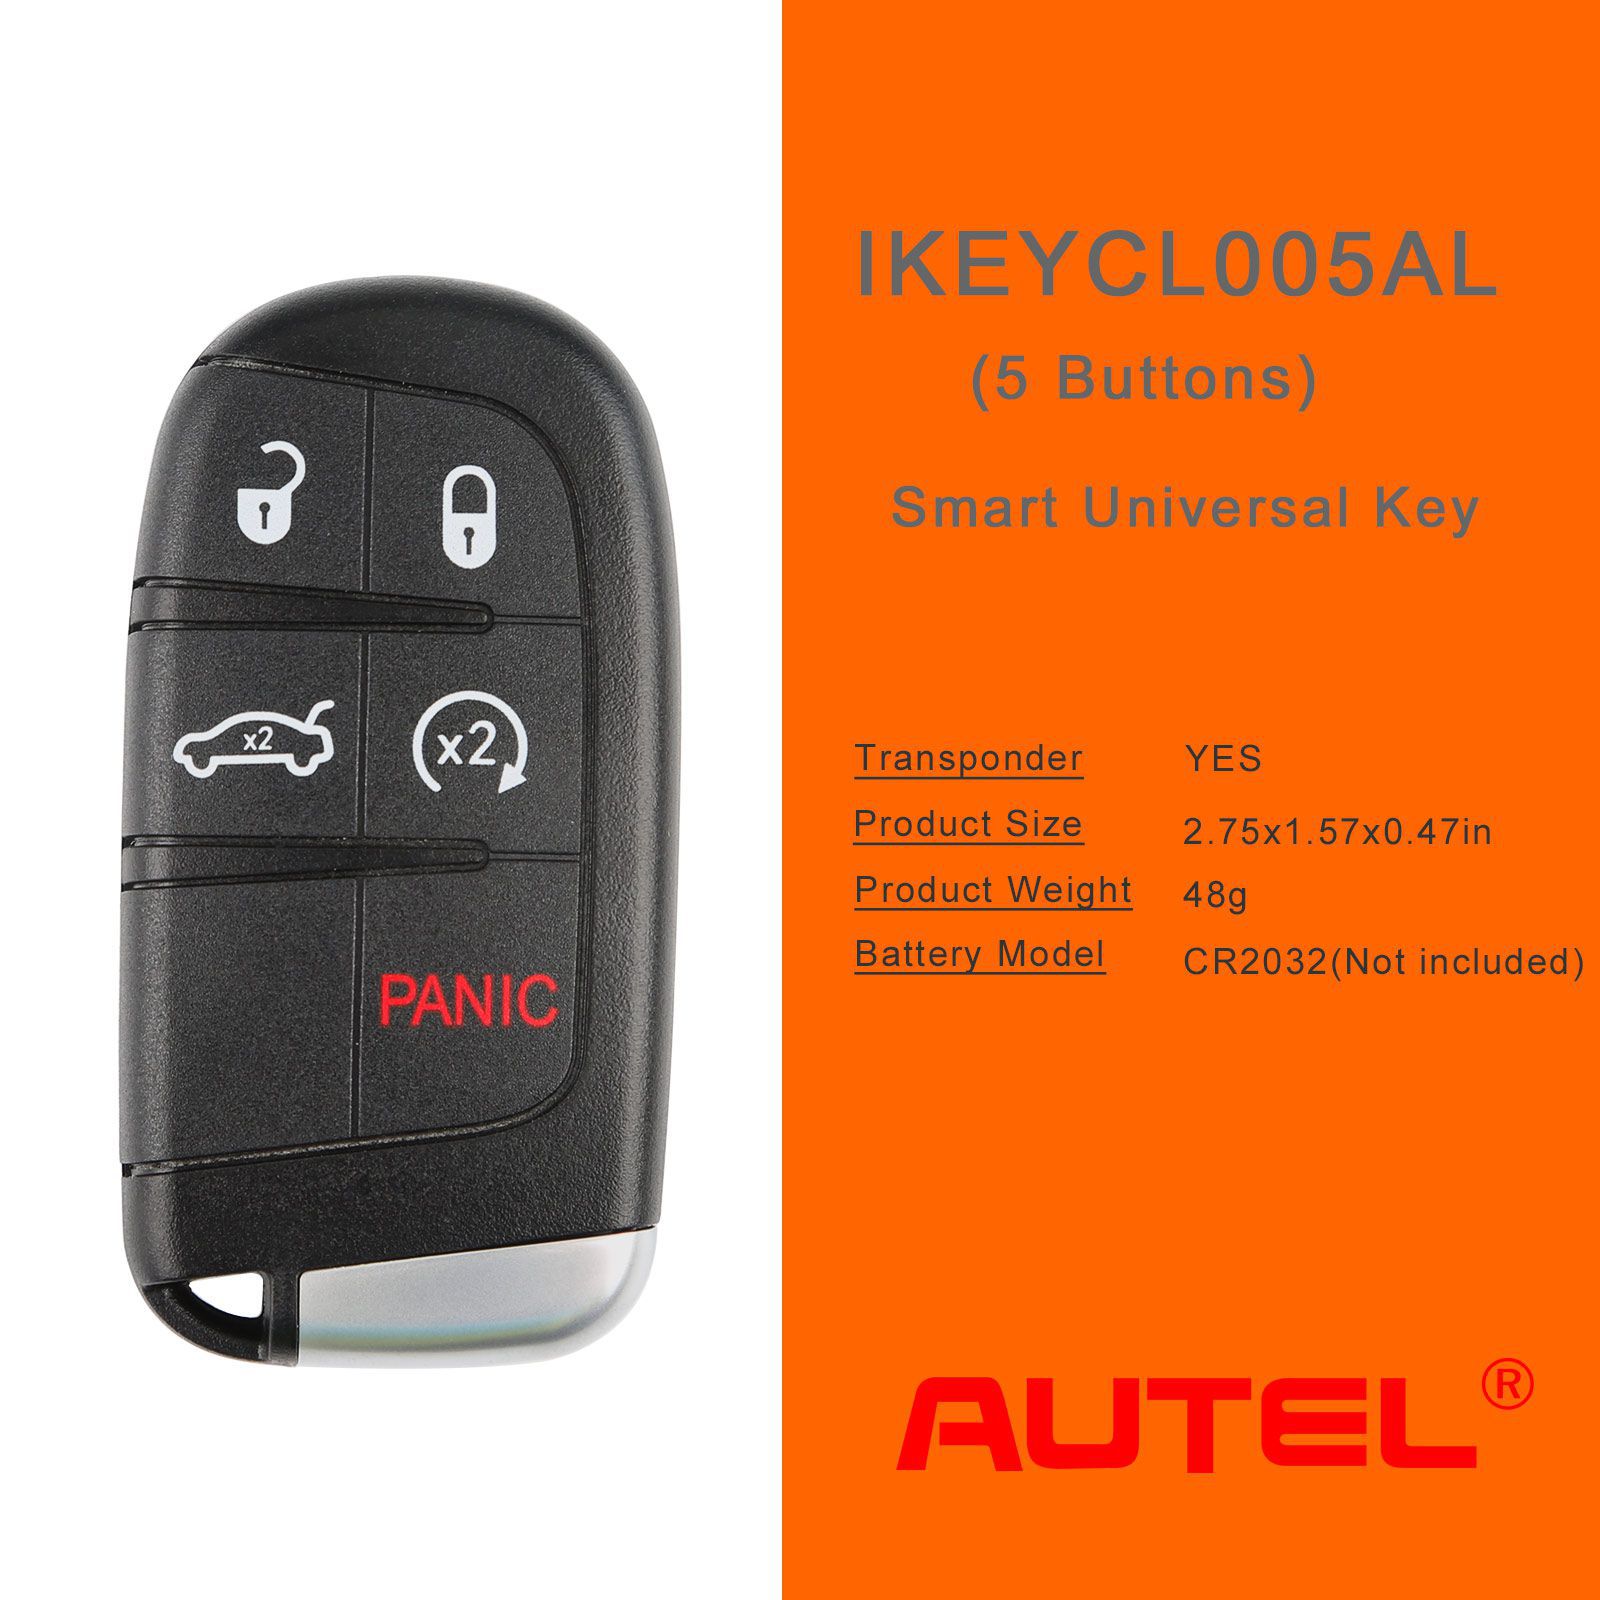 AUTEL IKEYCL005AL Chrysler 5 Botões Universal Smart Key 5 pçs/lote